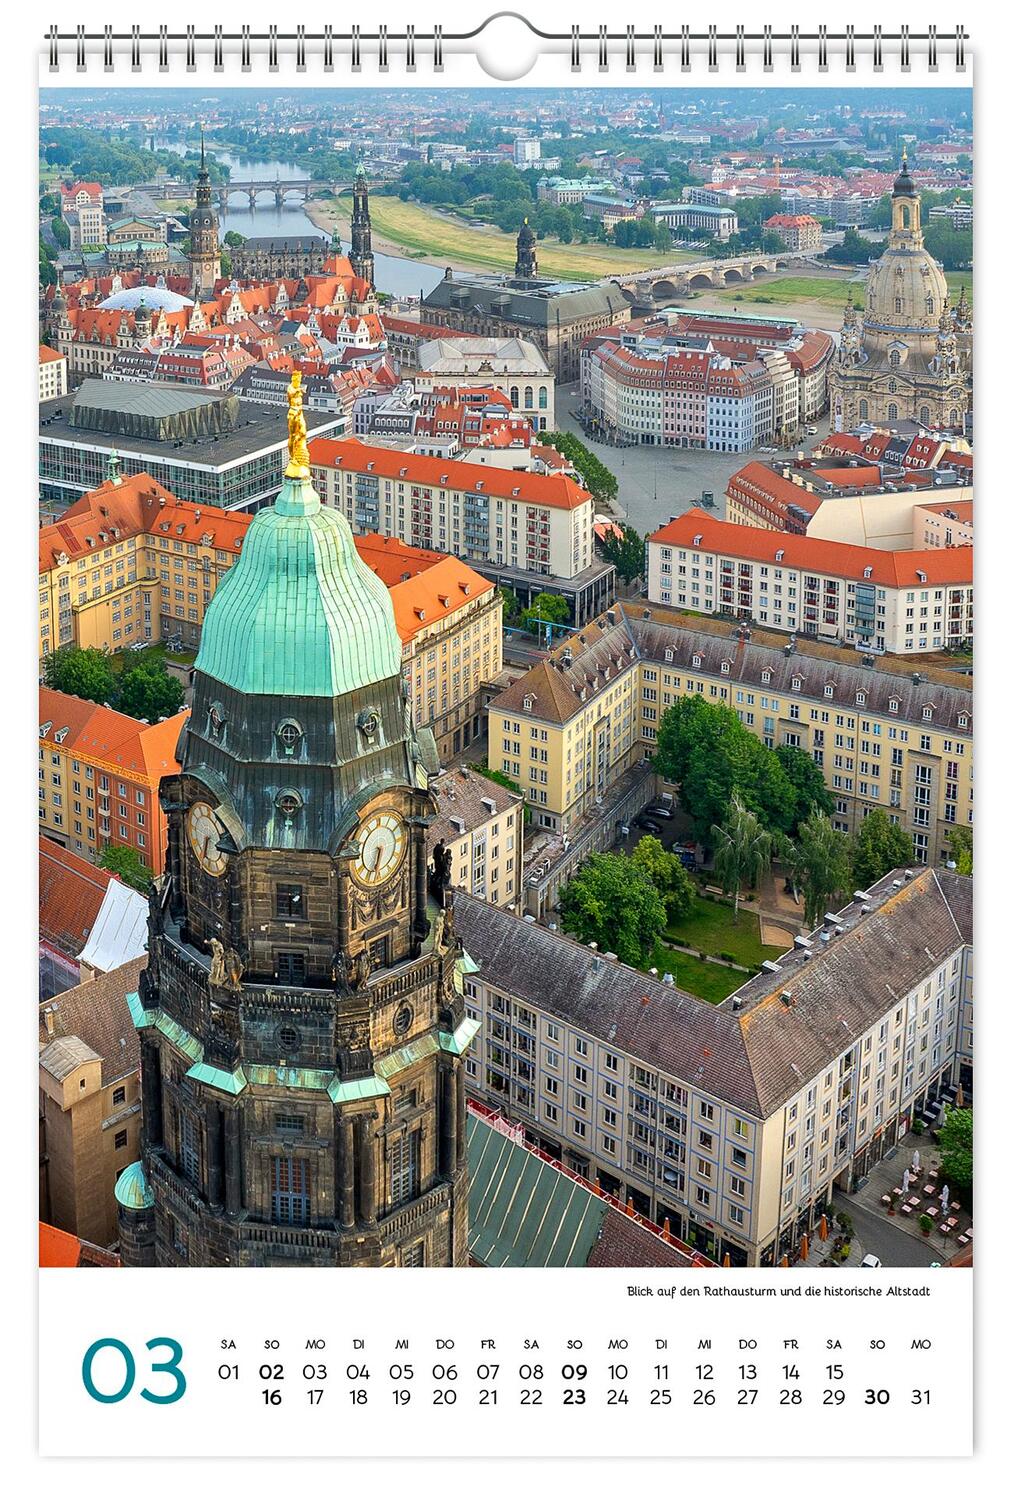 Bild: 9783910680678 | Kalender Dresden und Sächsische Schweiz 2025 | Peter Schubert | 2025